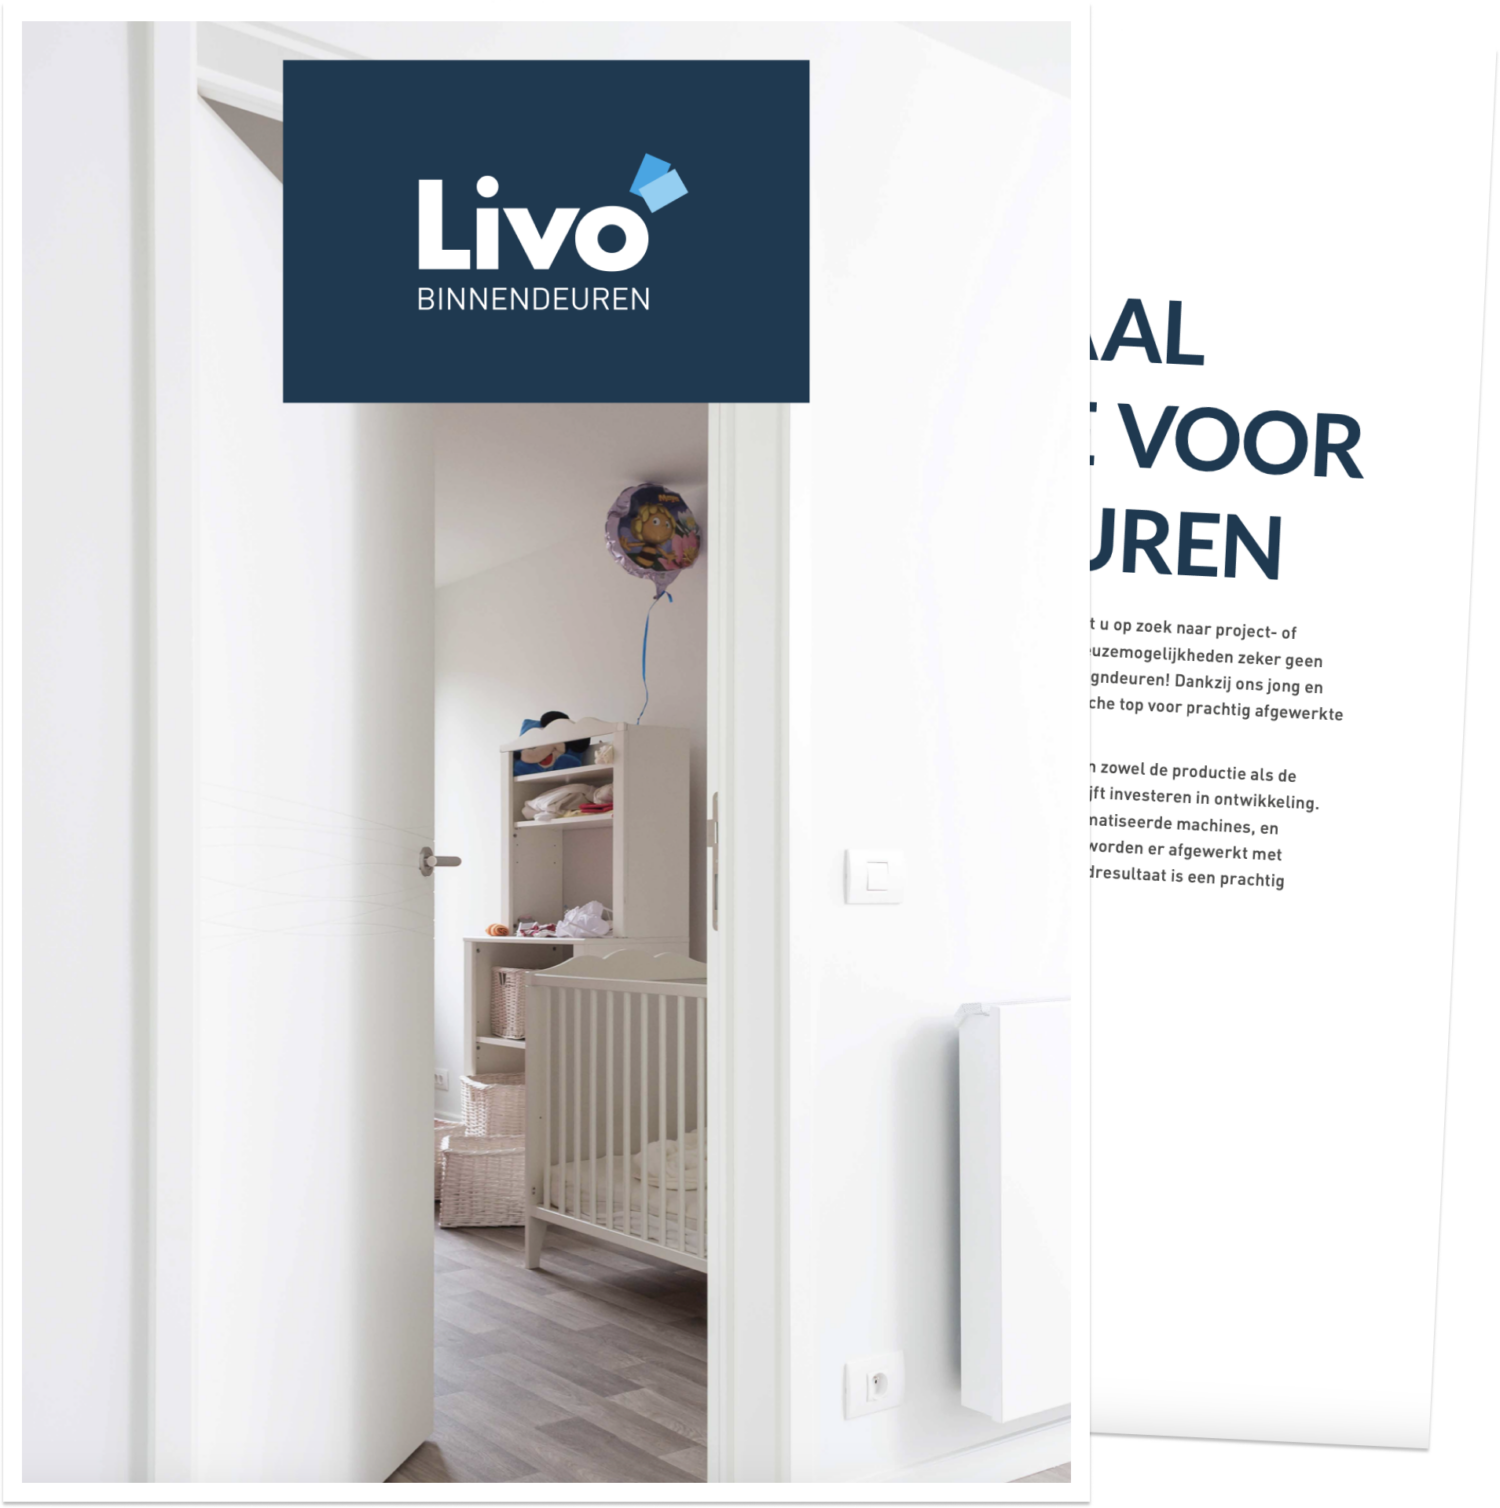 Binnendeuren Catalogus Download Livo